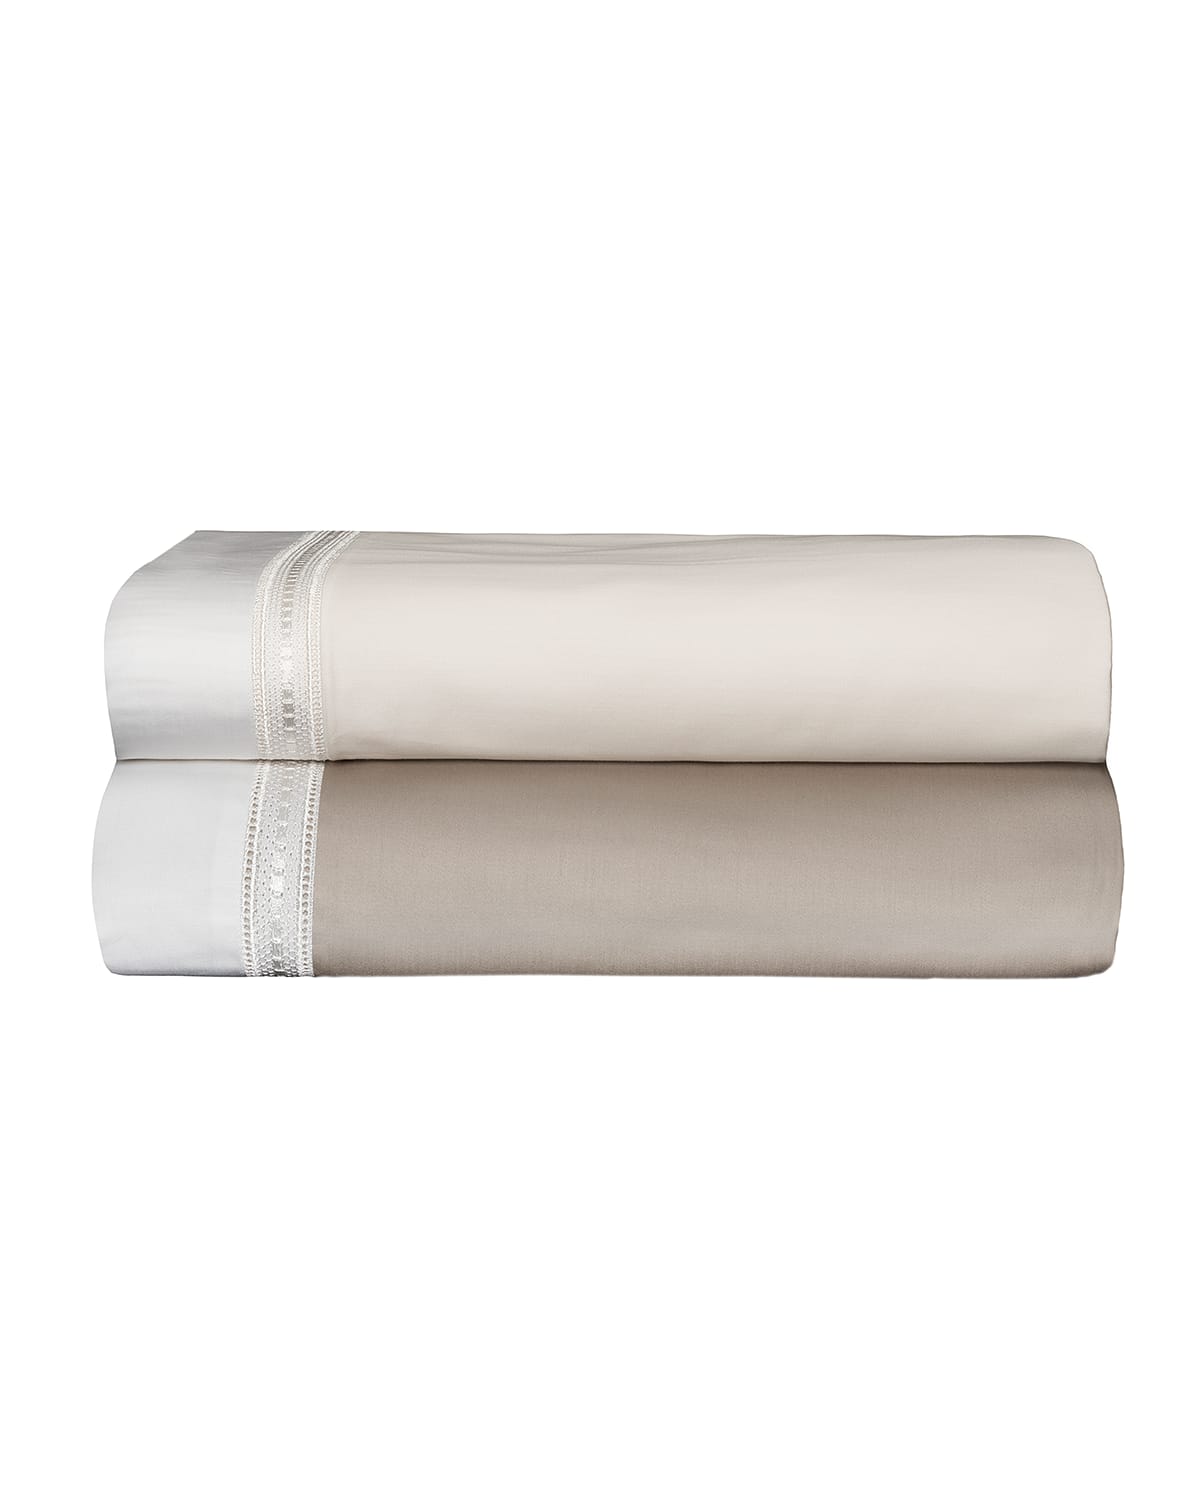 Bovi Fine Linens Devere Full/queen Sheet Set, Taupe/white